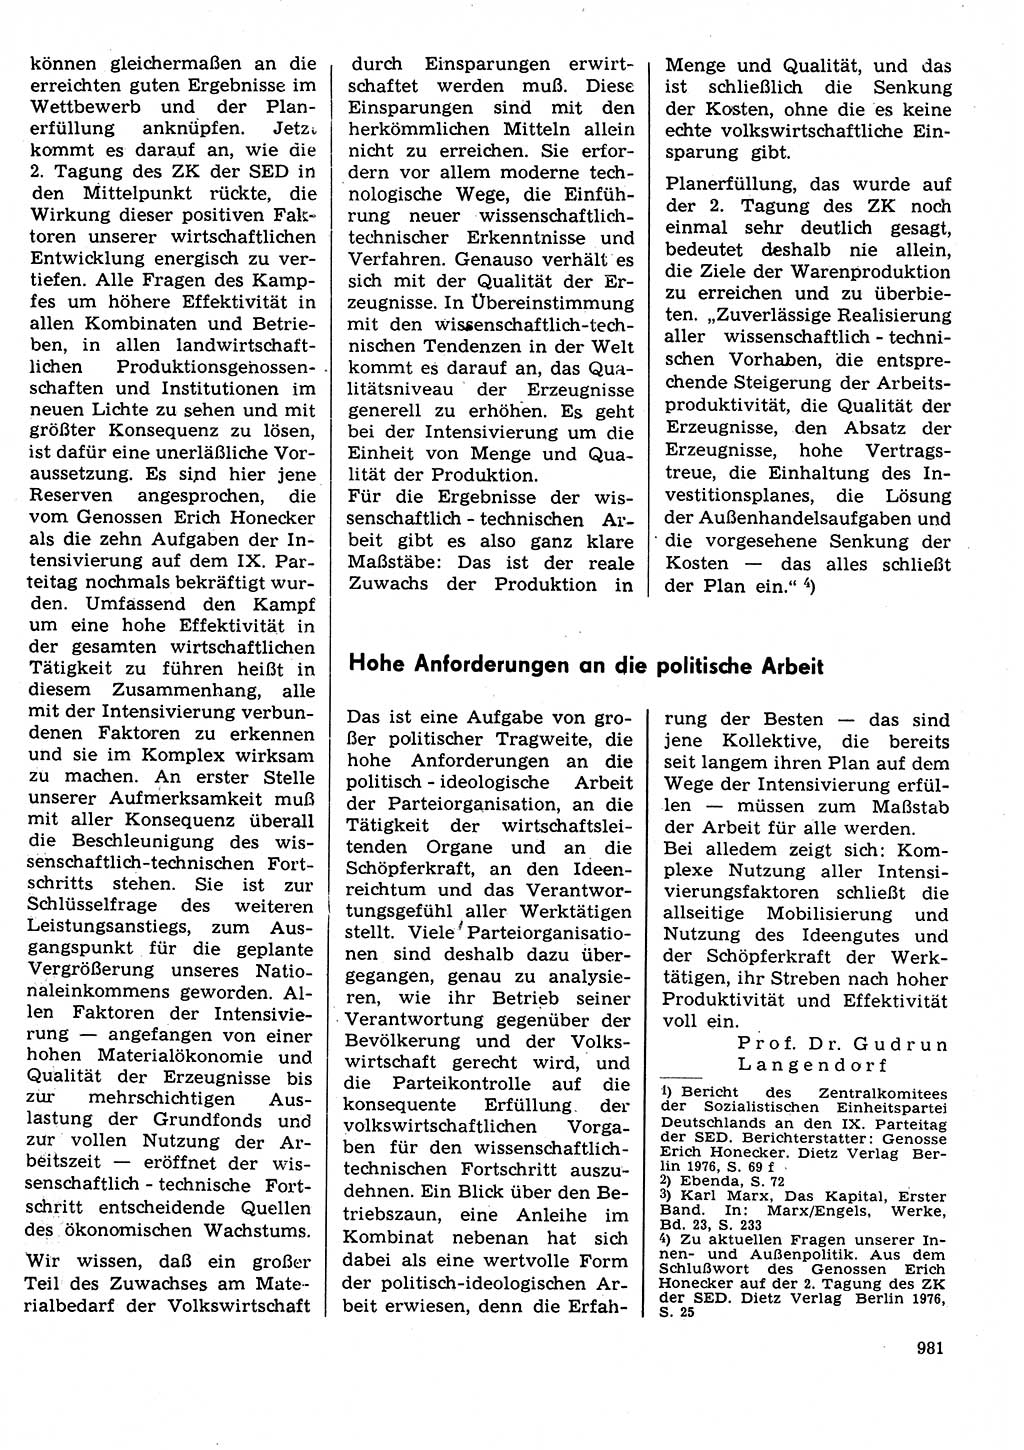 Neuer Weg (NW), Organ des Zentralkomitees (ZK) der SED (Sozialistische Einheitspartei Deutschlands) für Fragen des Parteilebens, 31. Jahrgang [Deutsche Demokratische Republik (DDR)] 1976, Seite 981 (NW ZK SED DDR 1976, S. 981)